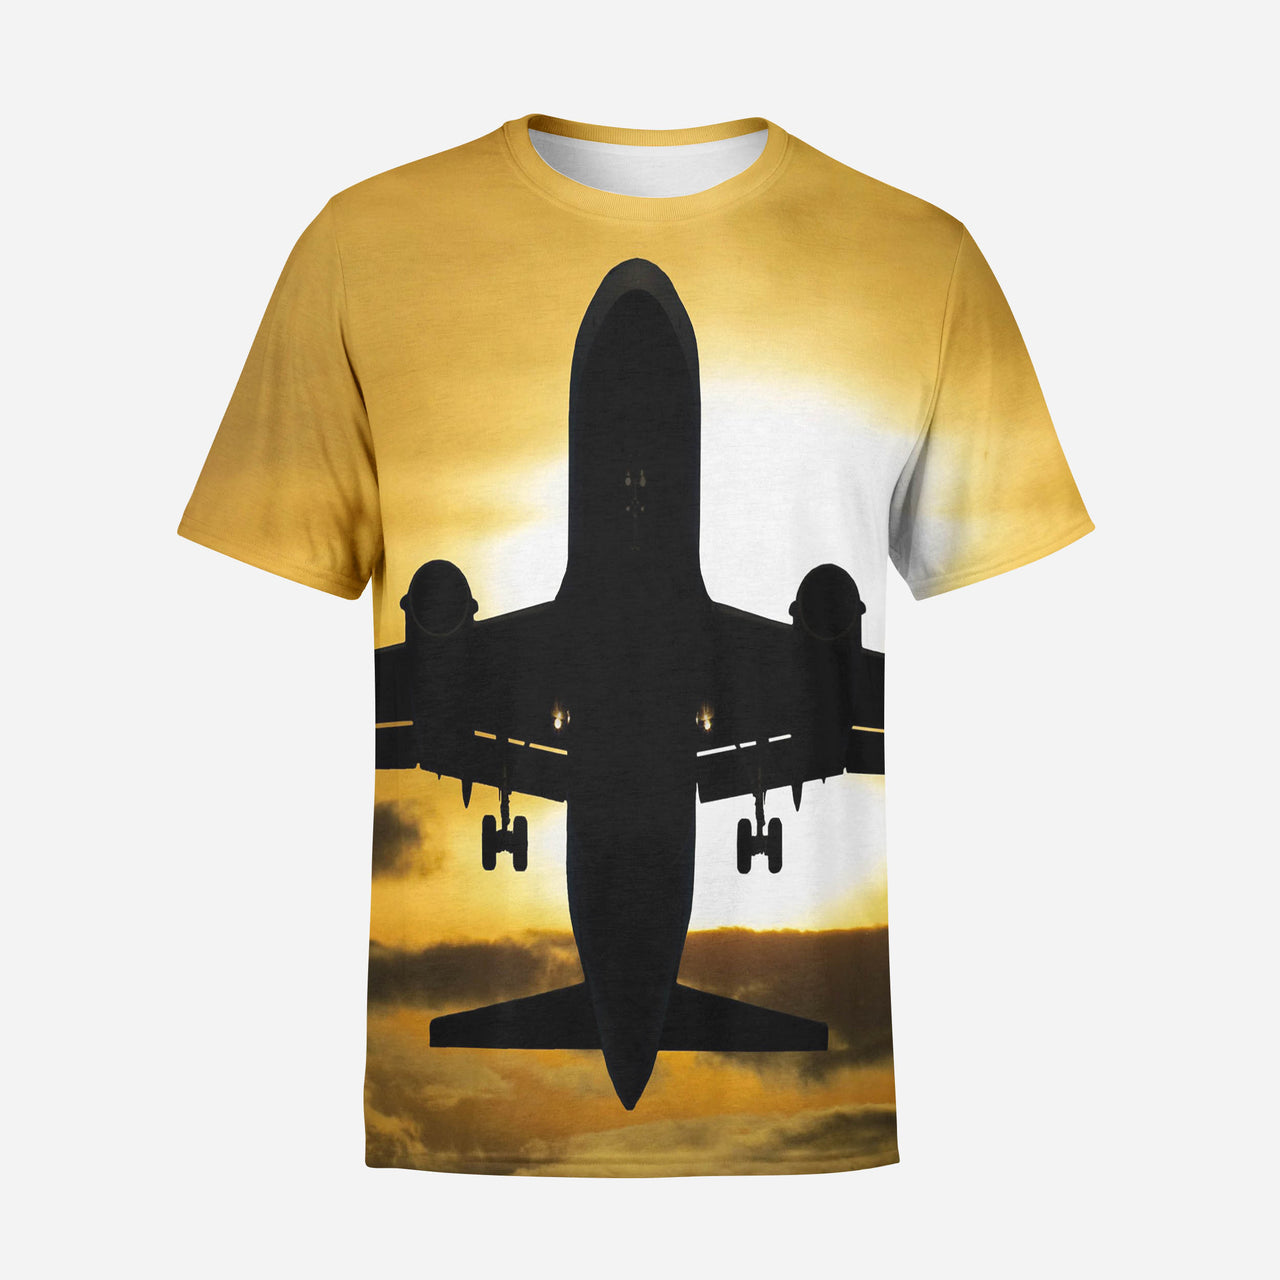 Departing Passanger Jet During Sunset Printed 3D T-Shirts